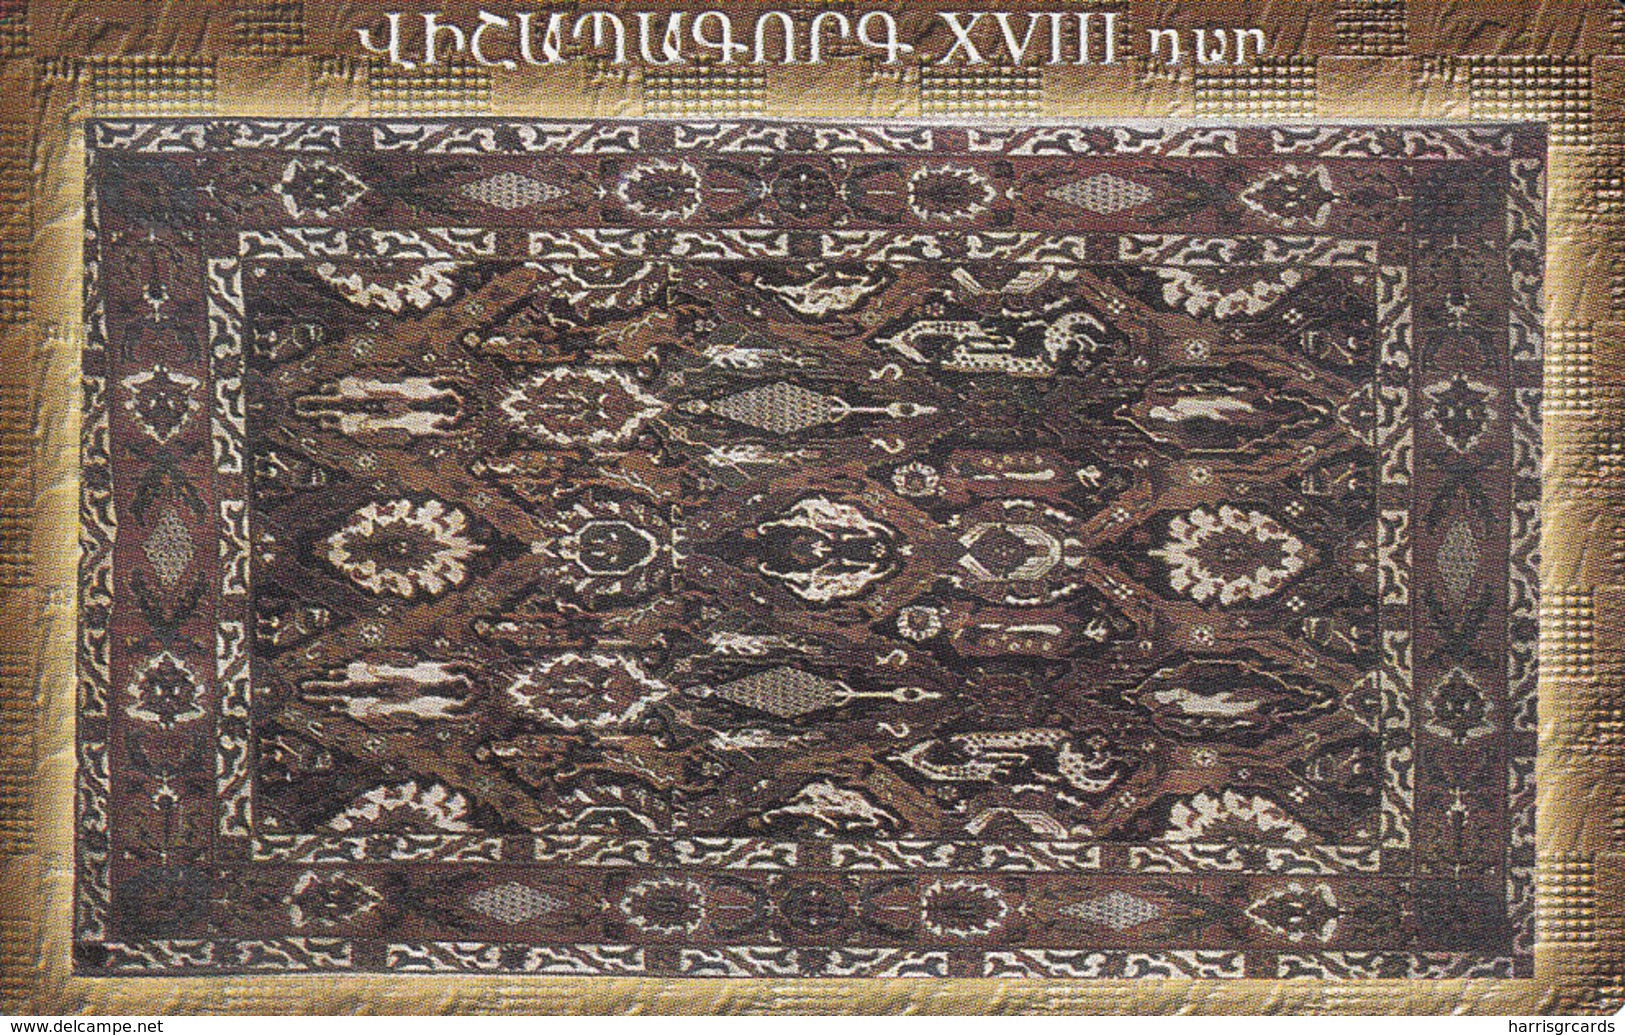 ARMENIA - Carpets 3, ArmenTel Telecard 50 Units, Tirage 16000, 11/02, Sample No Chip And No CN - Arménie